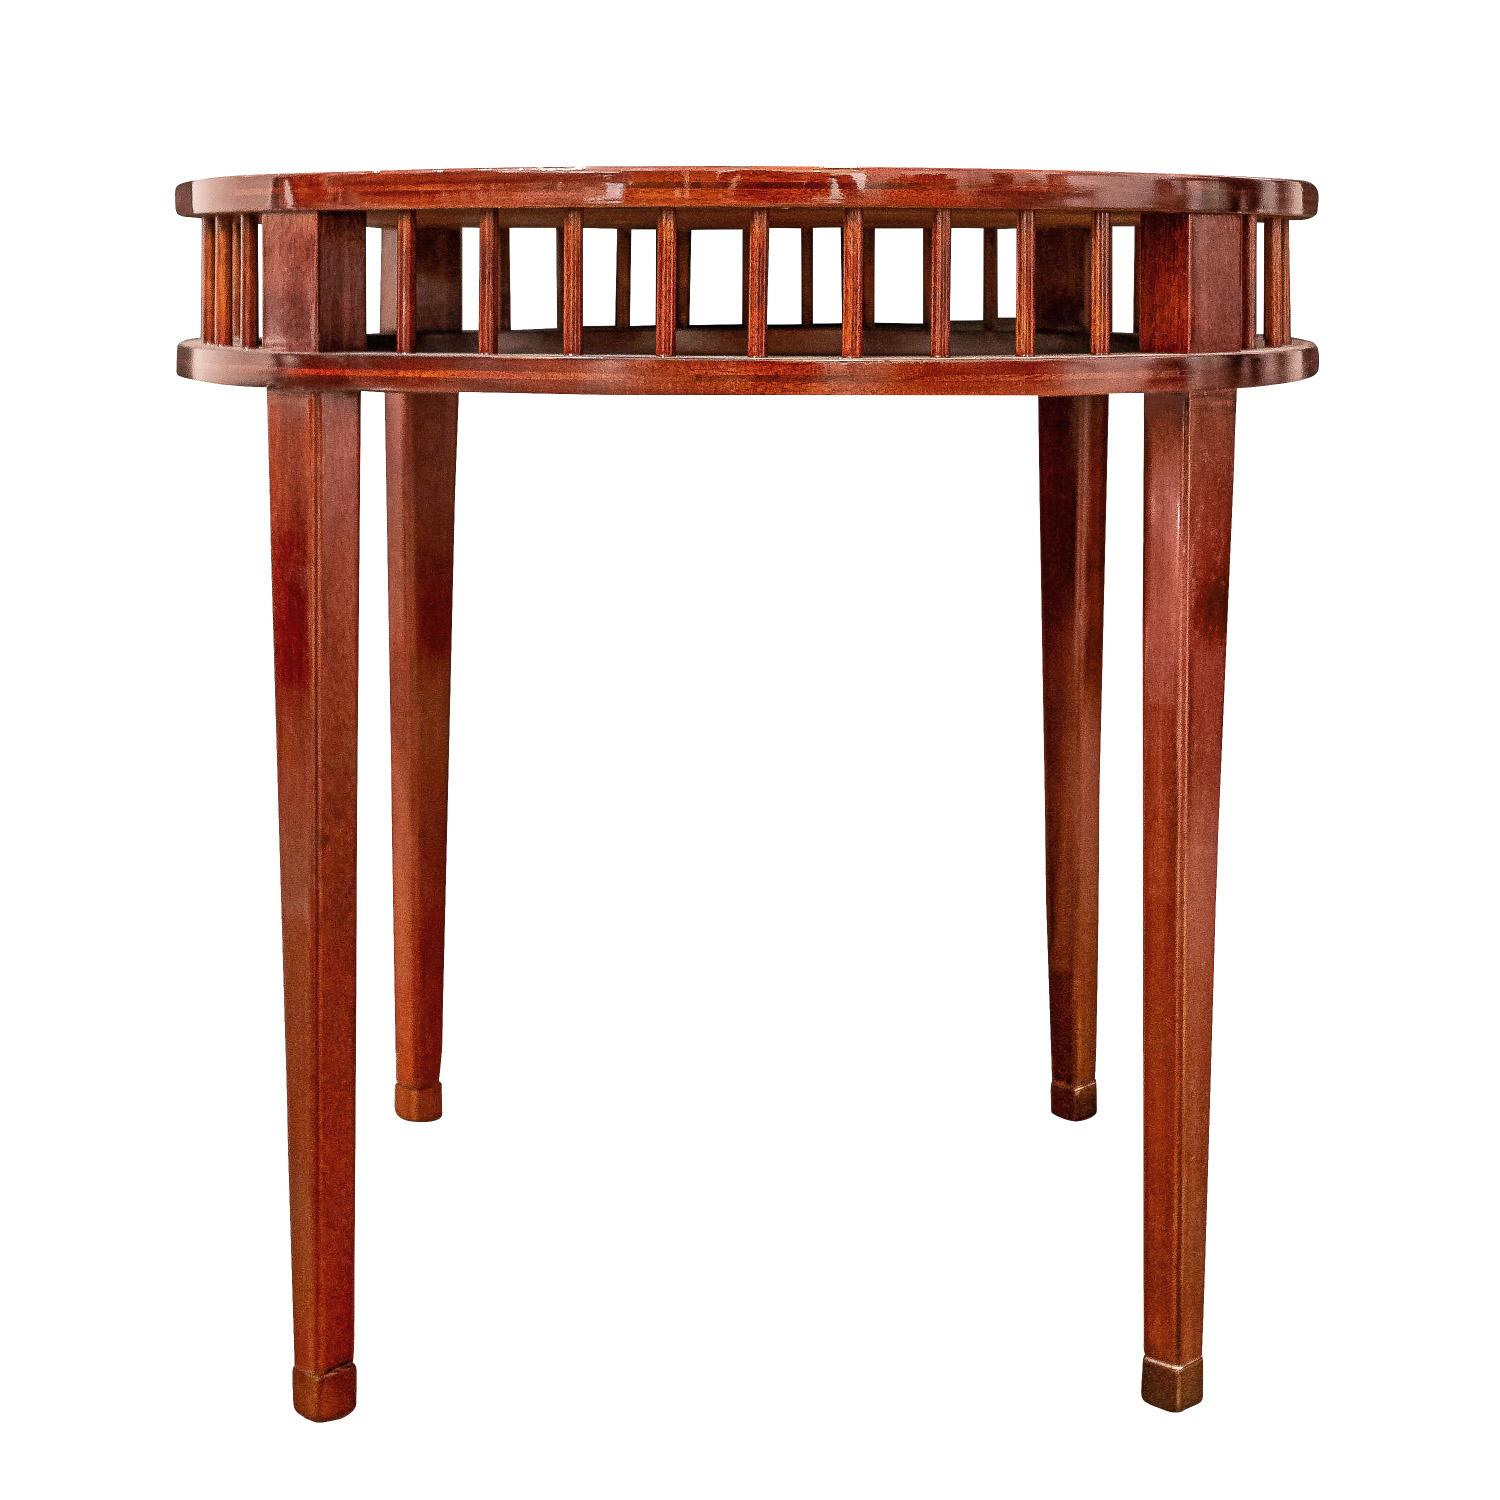 American Shelton-Mindel Designed Round Mahogany Side Table 1990s